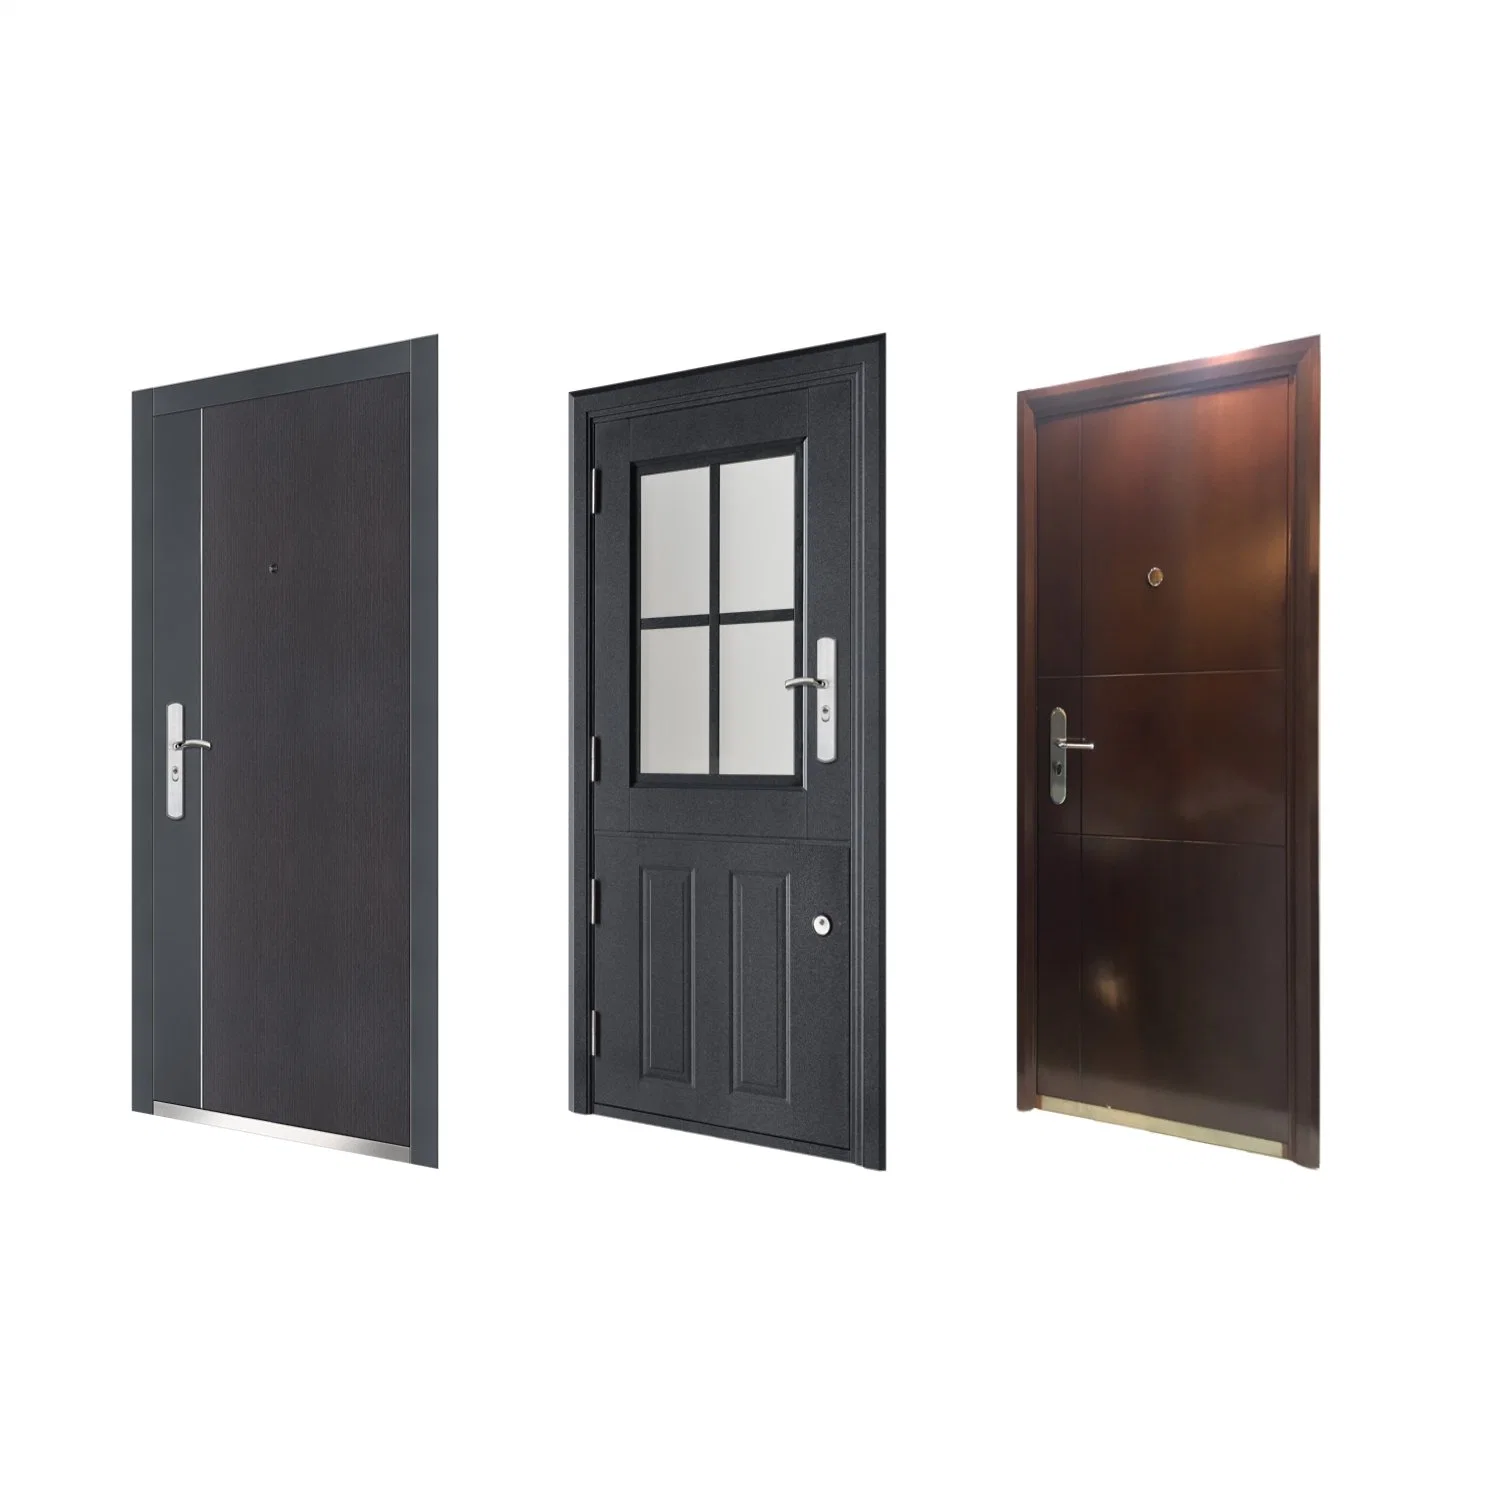 Iron Door Metal Security Steel Wooden Armored Door for Home Gate